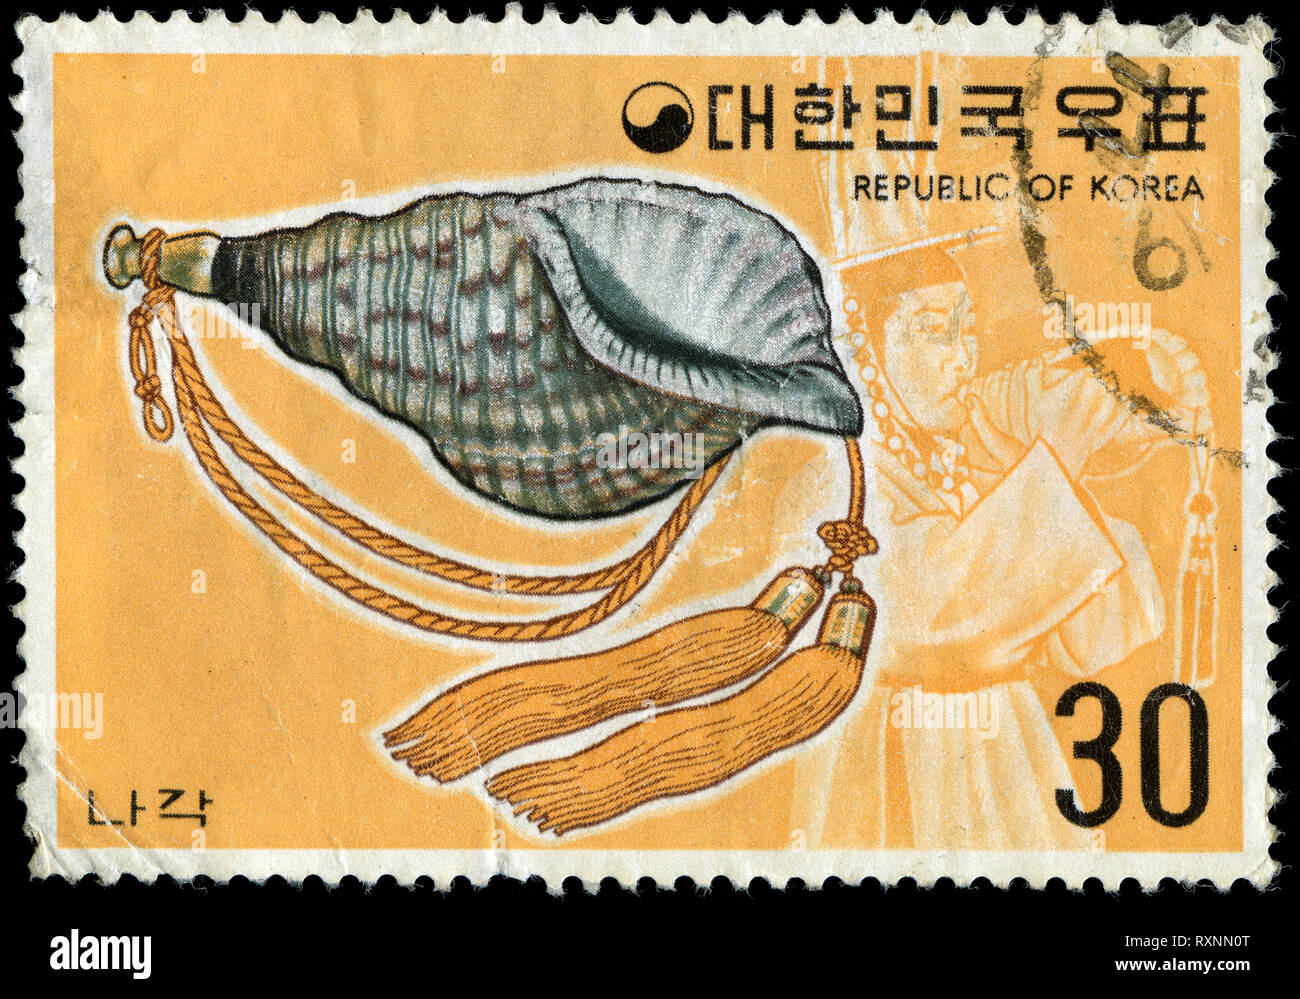 Timbre-poste de la Corée du Sud dans le Instruments de musique coréenne (I) série émise en 1974 Banque D'Images